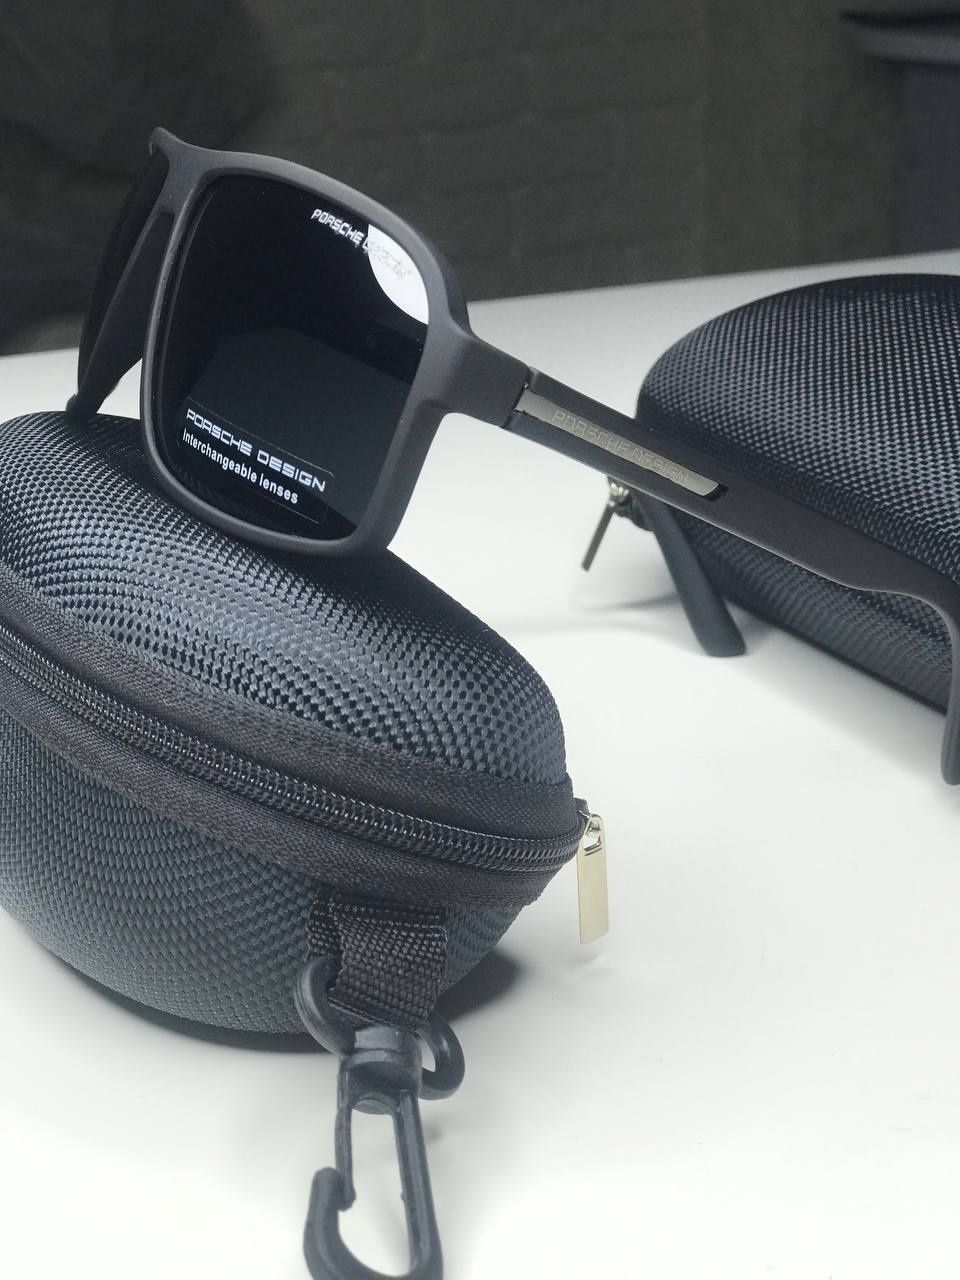 Мужские солнцезащитные очки Porsche Polarized черные матовые антиблик